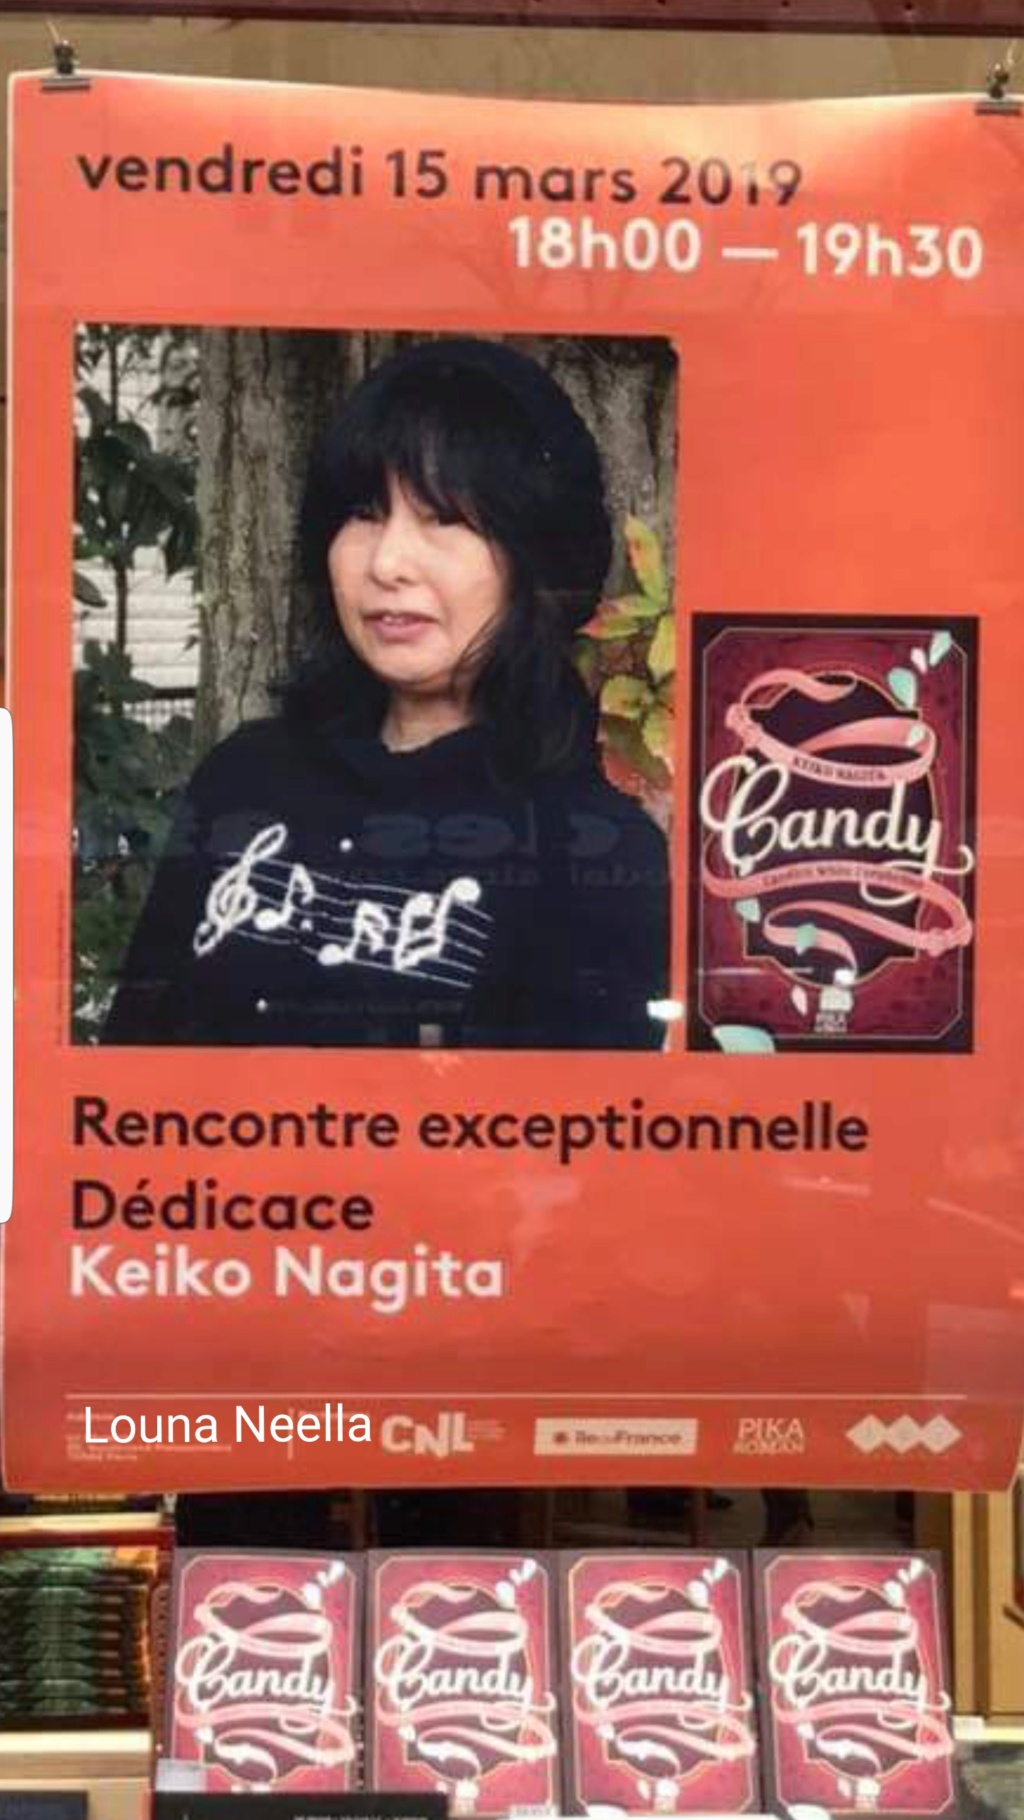 Roman Cfs Auteur Keiko Nagita version originale Japonaise traduit en 3 langues :  20201113